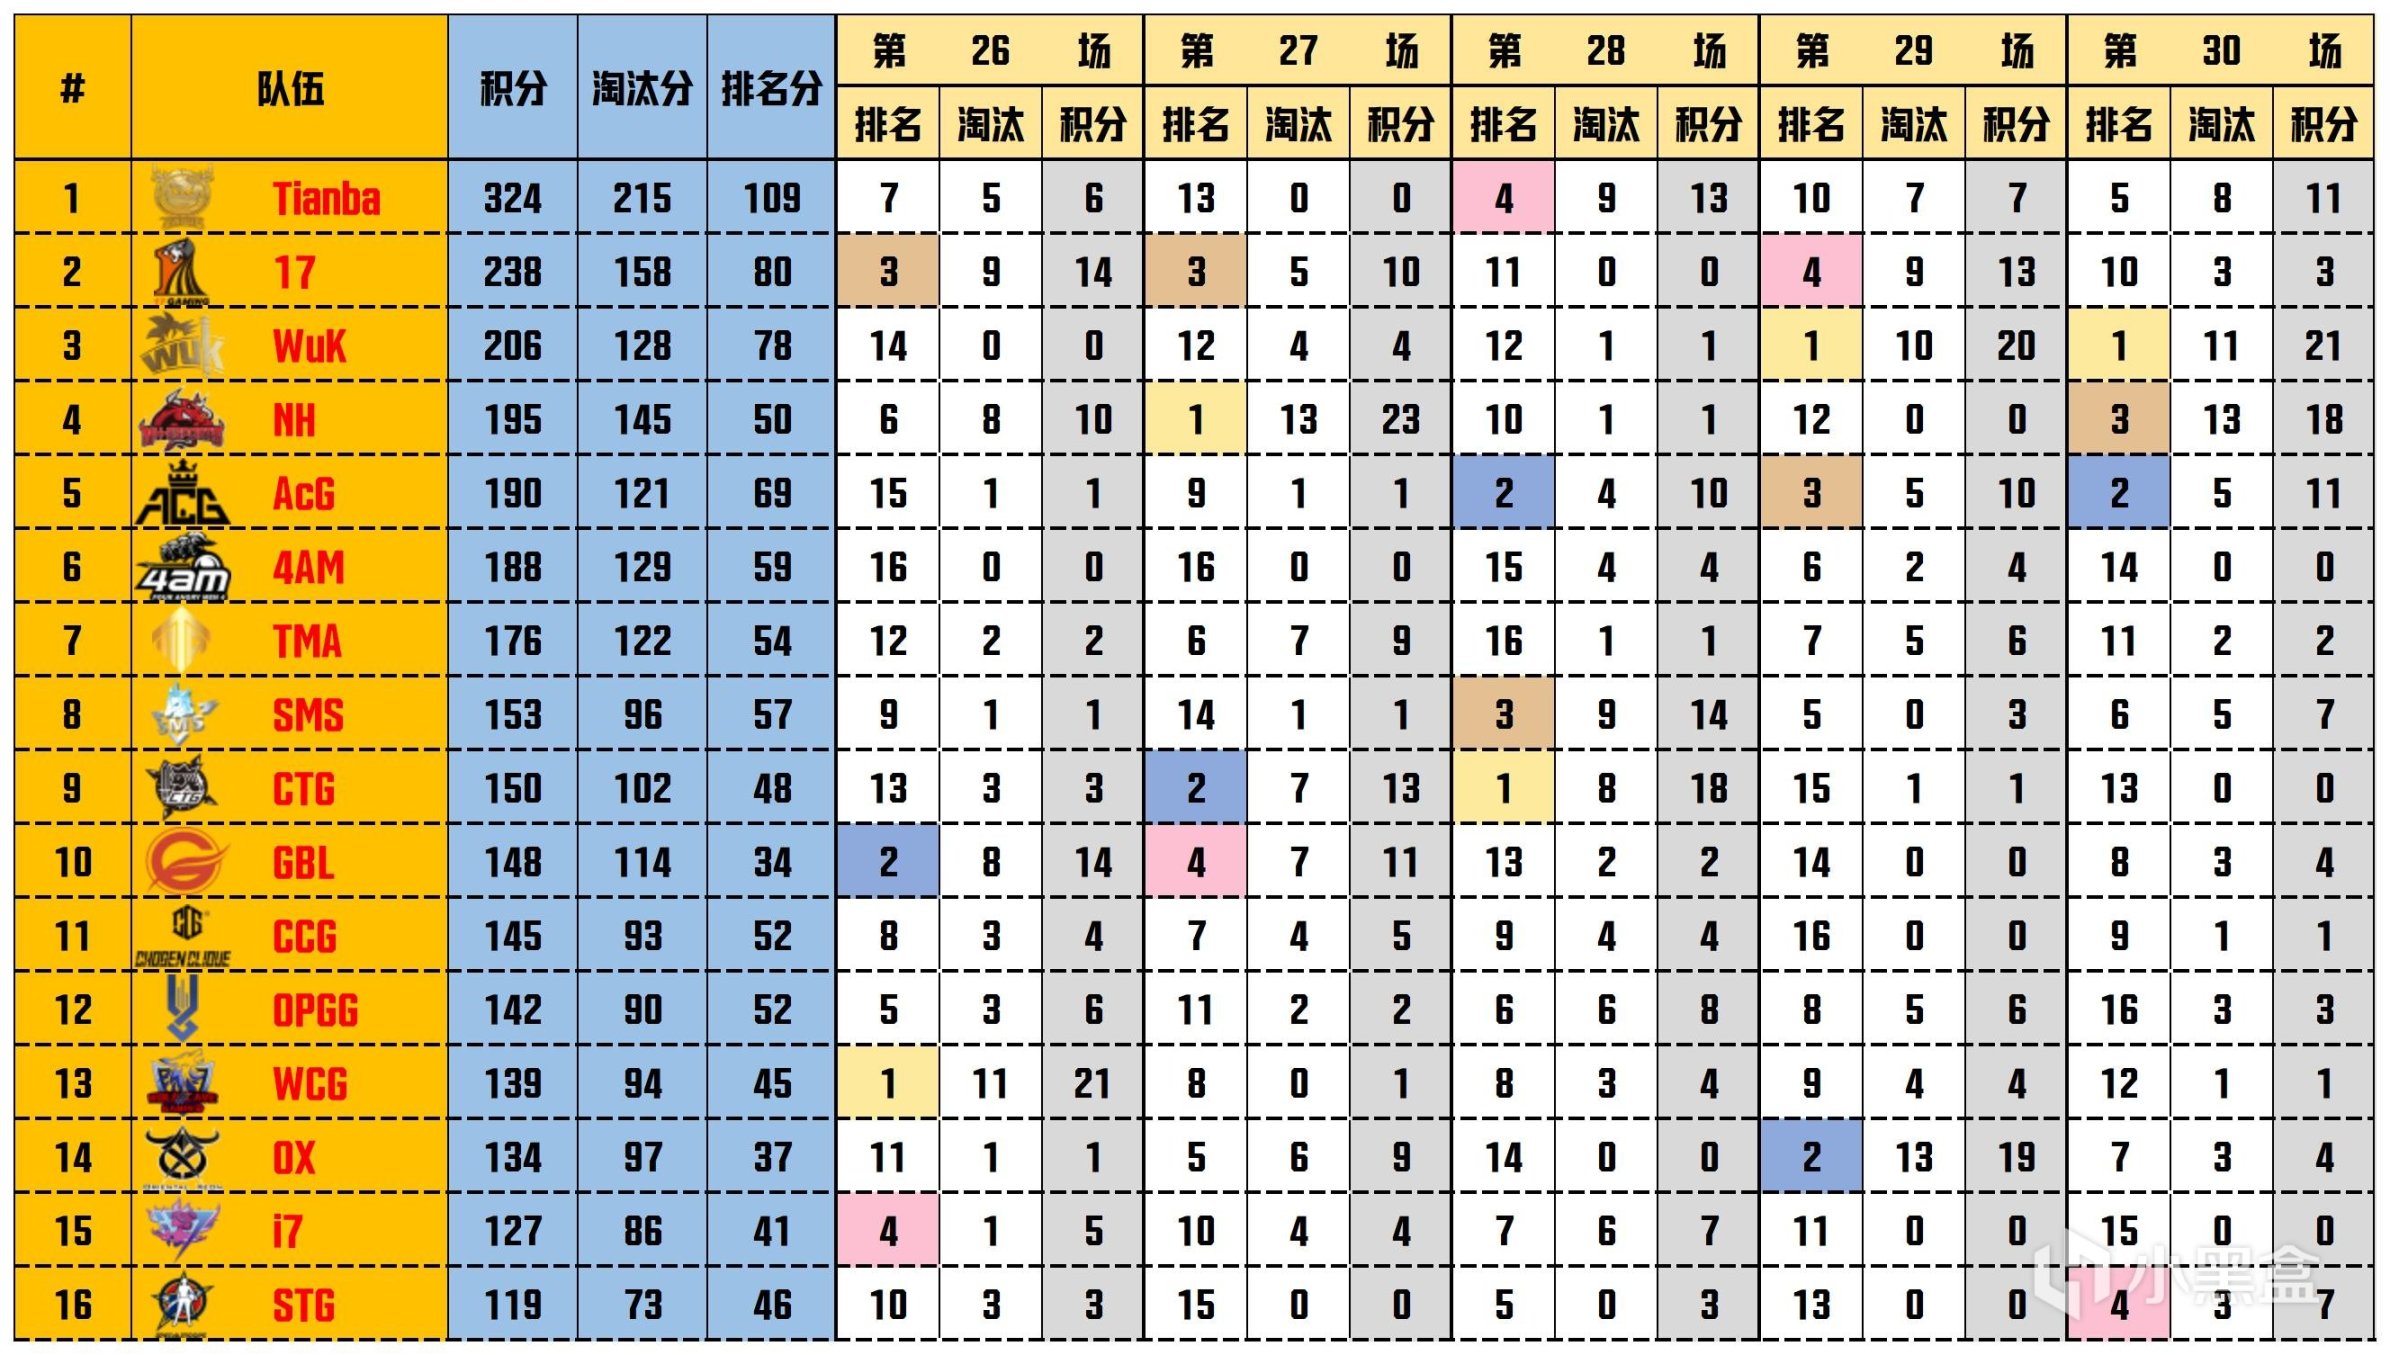 【數據流】天命杯S10,Tianba 324分奪得冠軍，LongSkr戰神61淘汰-第2張